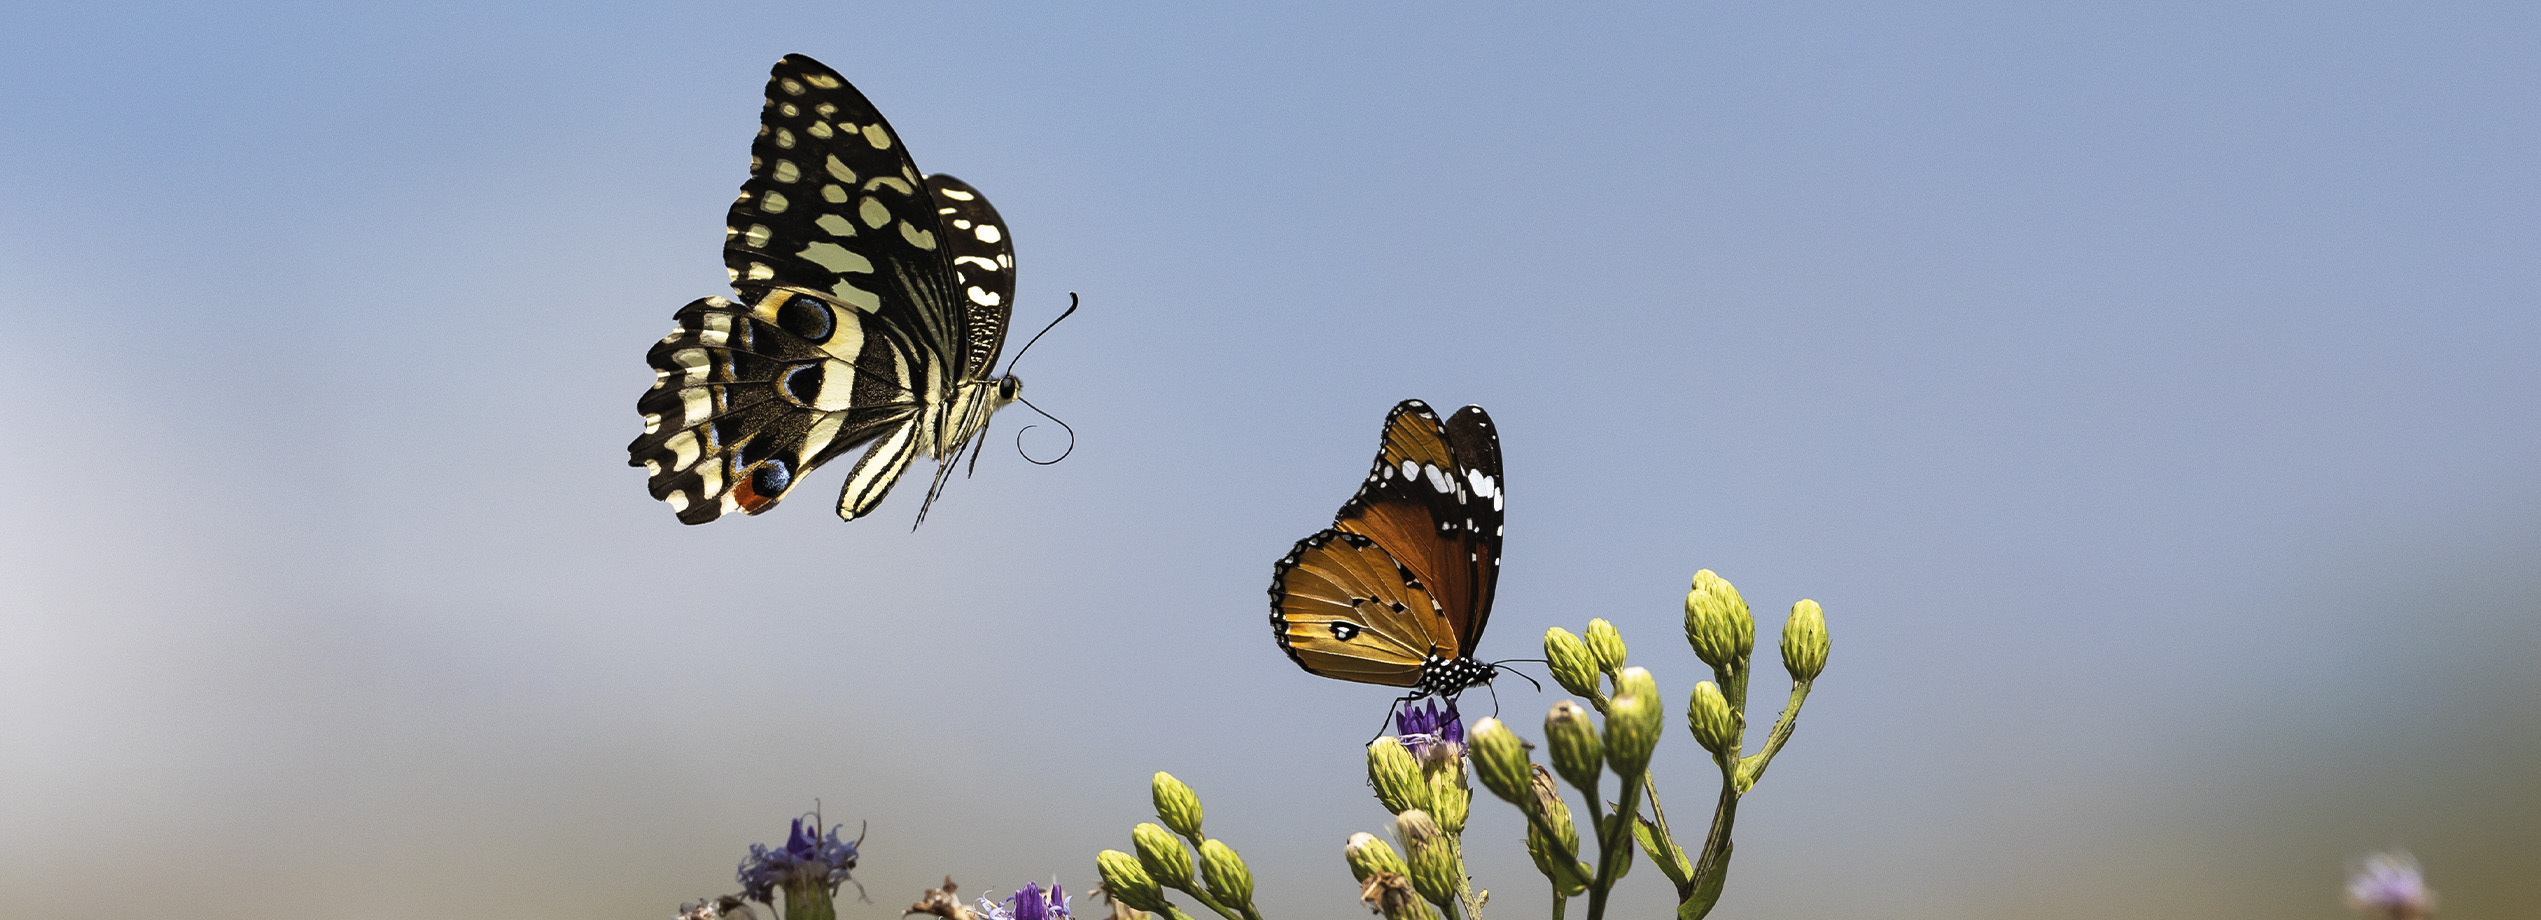 Photo de papillons en vol, prise par Tony Crocette au Kenya. L'image montre un grand papillon noir et blanc volant près d'un autre papillon orange et noir, posé sur une fleur, sous un ciel bleu clair. Magazine de photographie de nature